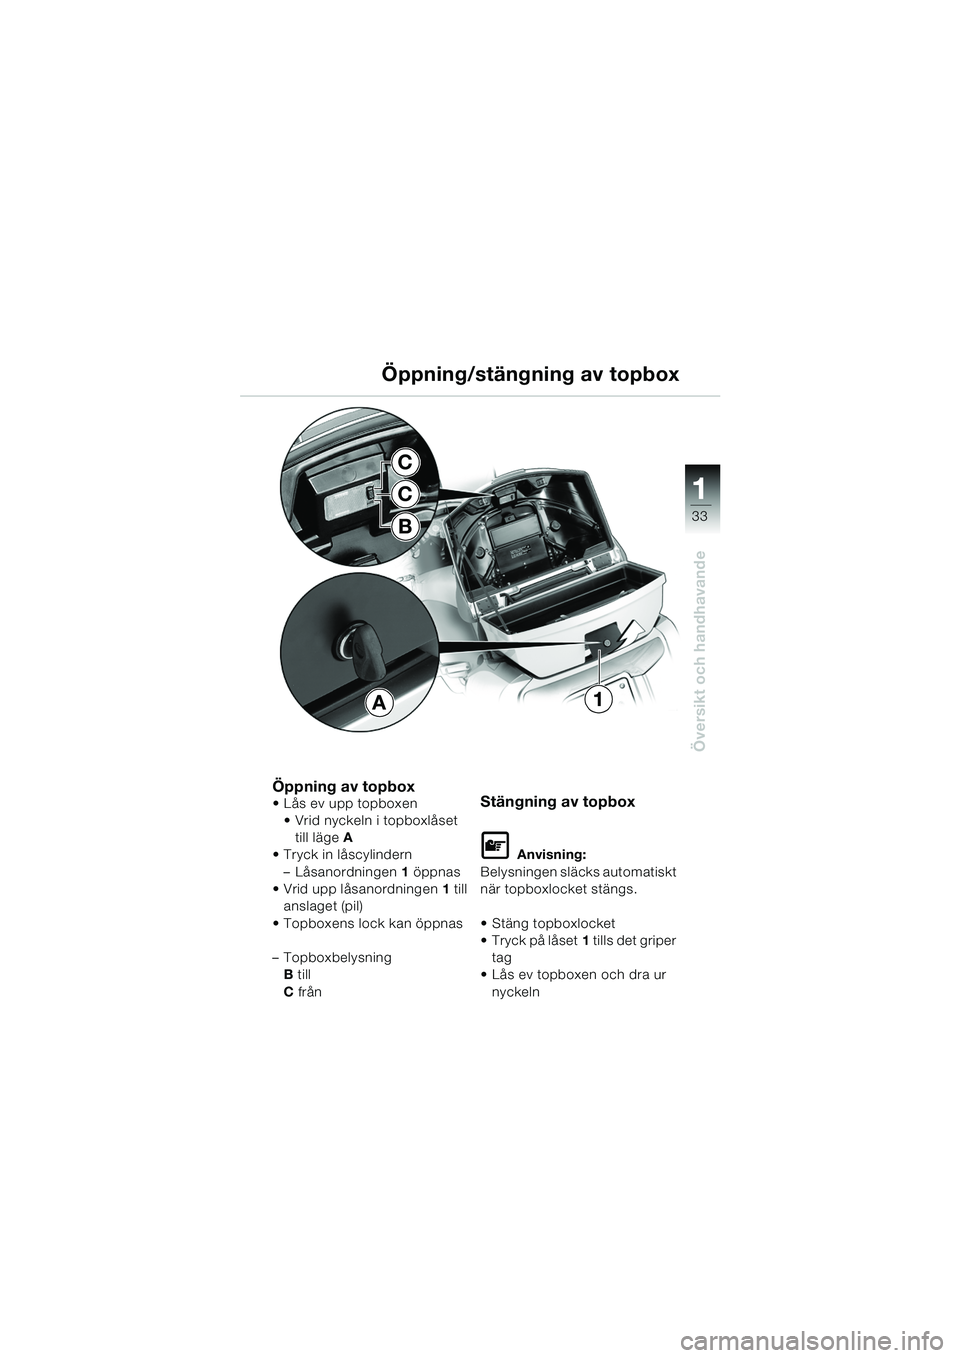 BMW MOTORRAD K 1200 LT 2005  Instruktionsbok (in Swedish) 33
Översikt och handhavande
1
Öppning/stängning av topbox
Öppning av topbox Lås ev upp topboxen  Vrid nyckeln i topboxlåset 
till läge A 
 Tryck in låscylindern
– Låsanordningen 1 öppna